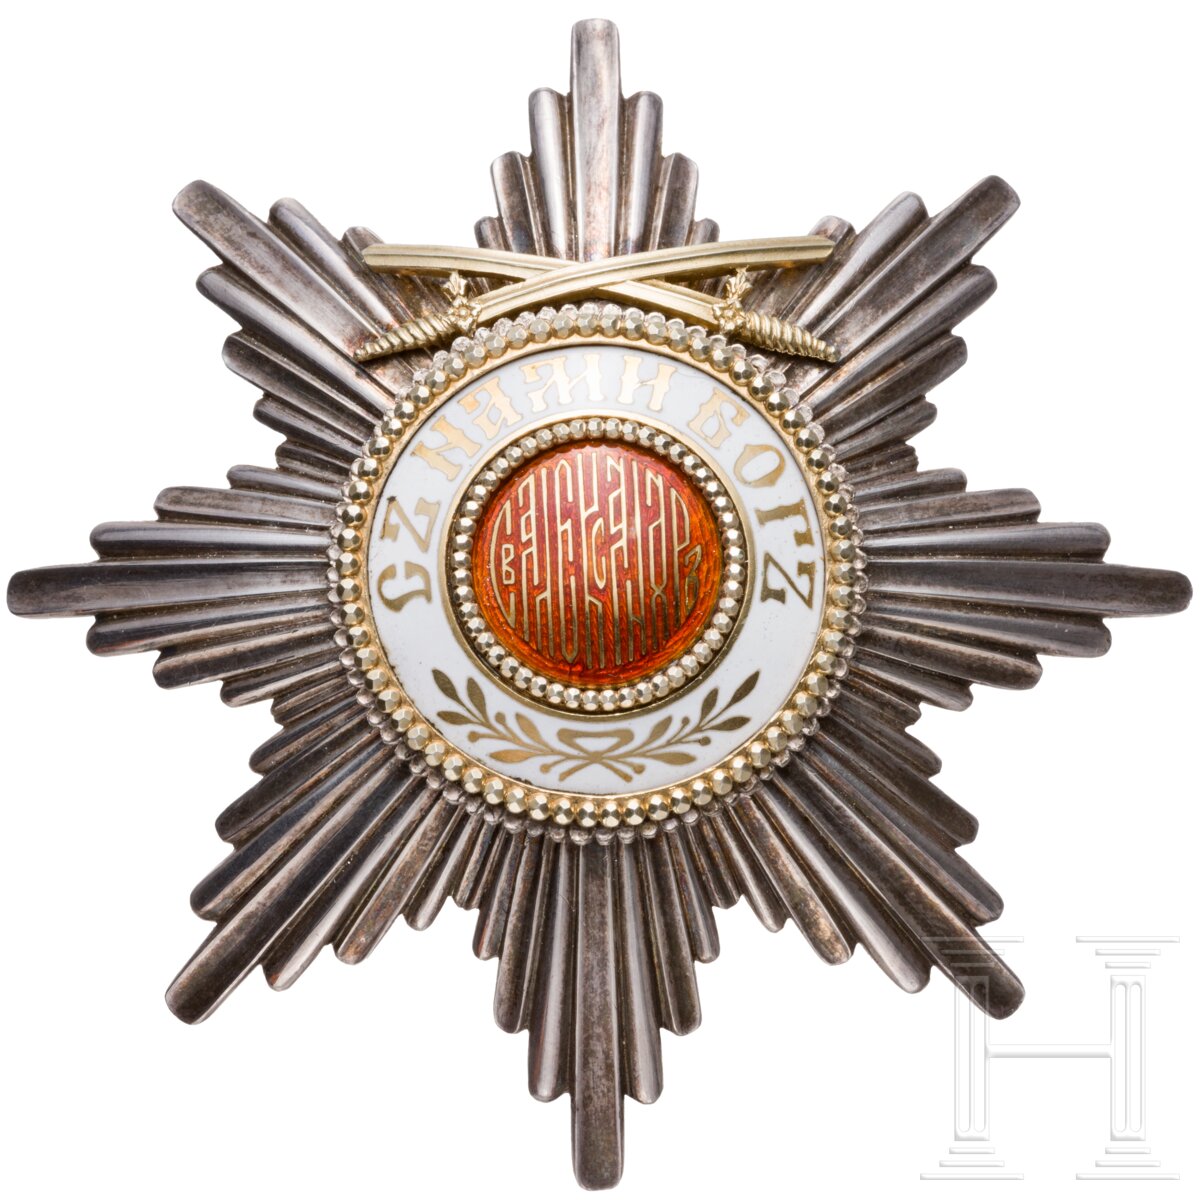 St.-Alexander-Orden - Bruststern zum Großkreuz mit Schwertern am Ring